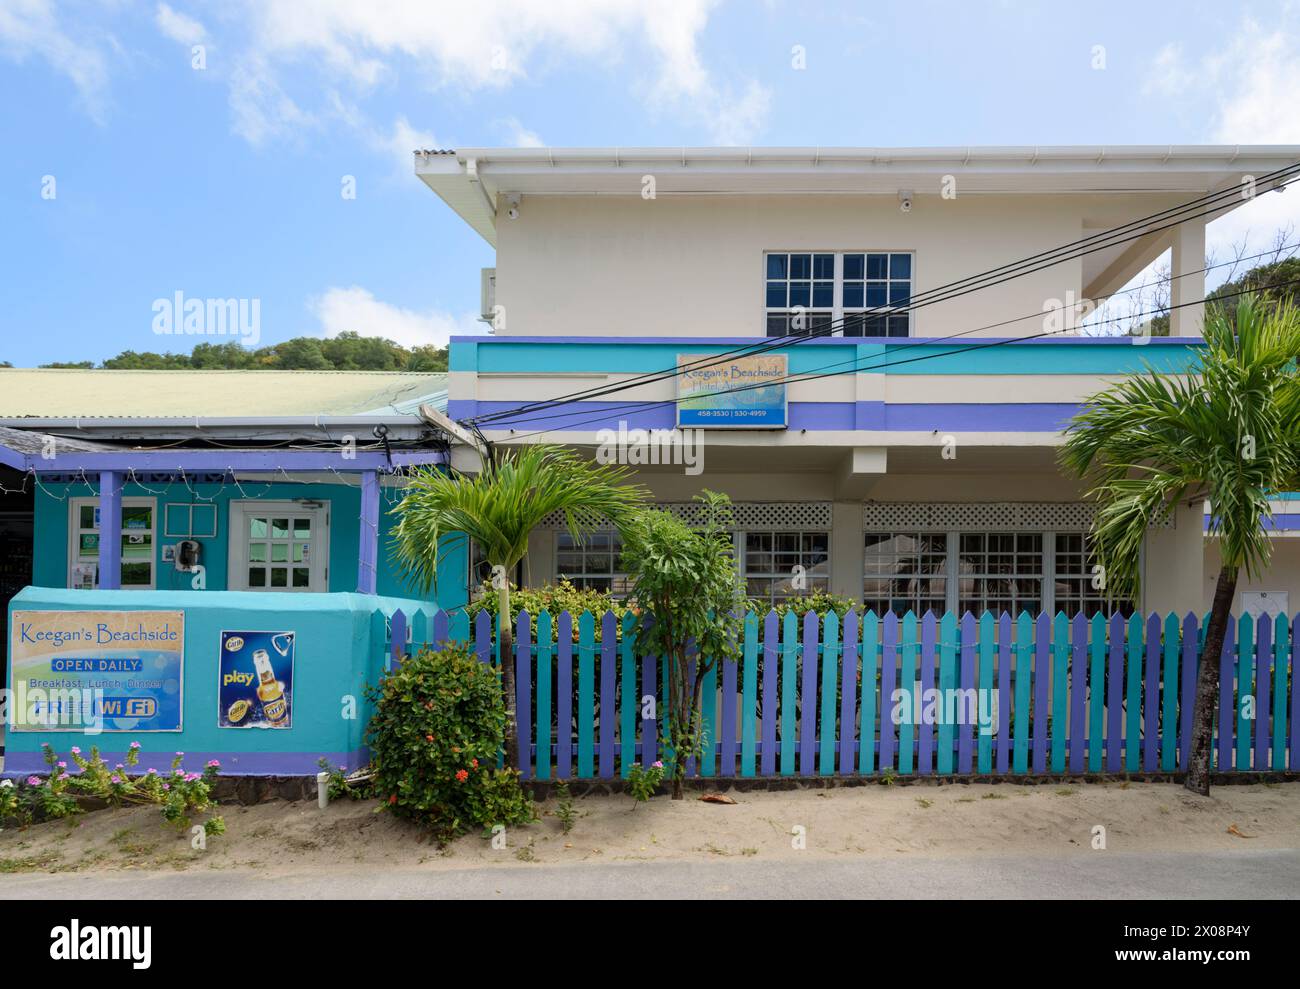 Bar et restaurant de bord de mer Keegan, plage de Lower Bay, île de Bequia, St Vincent et les Grenadines, Caraïbes Banque D'Images